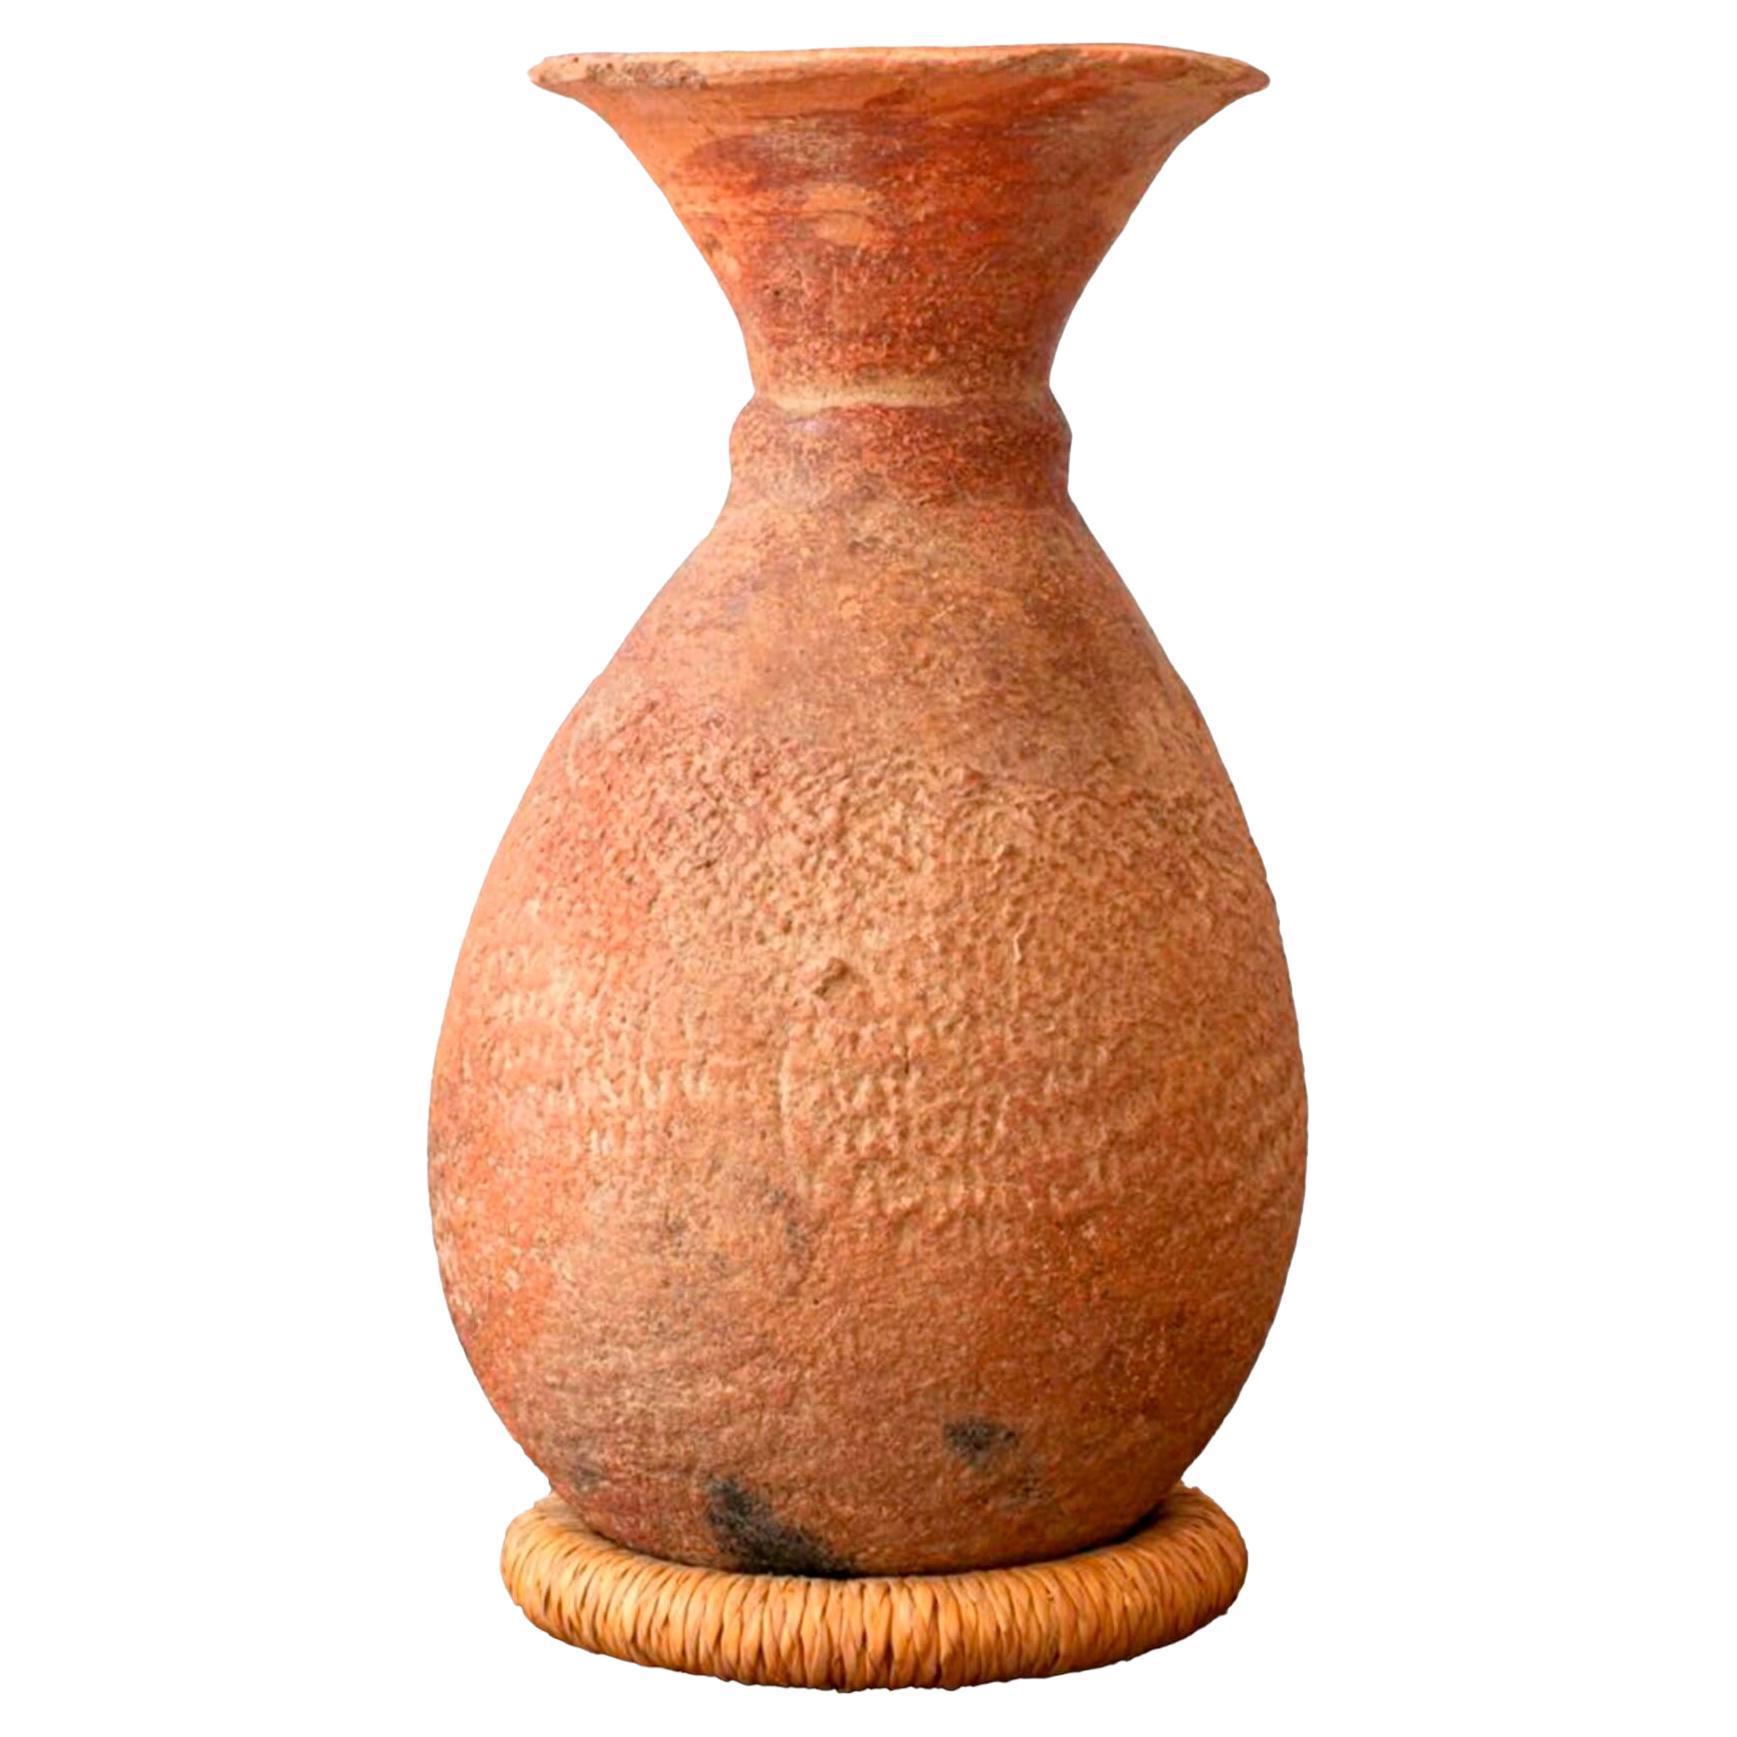 Terracotta Djenné (Mali, Afrique)